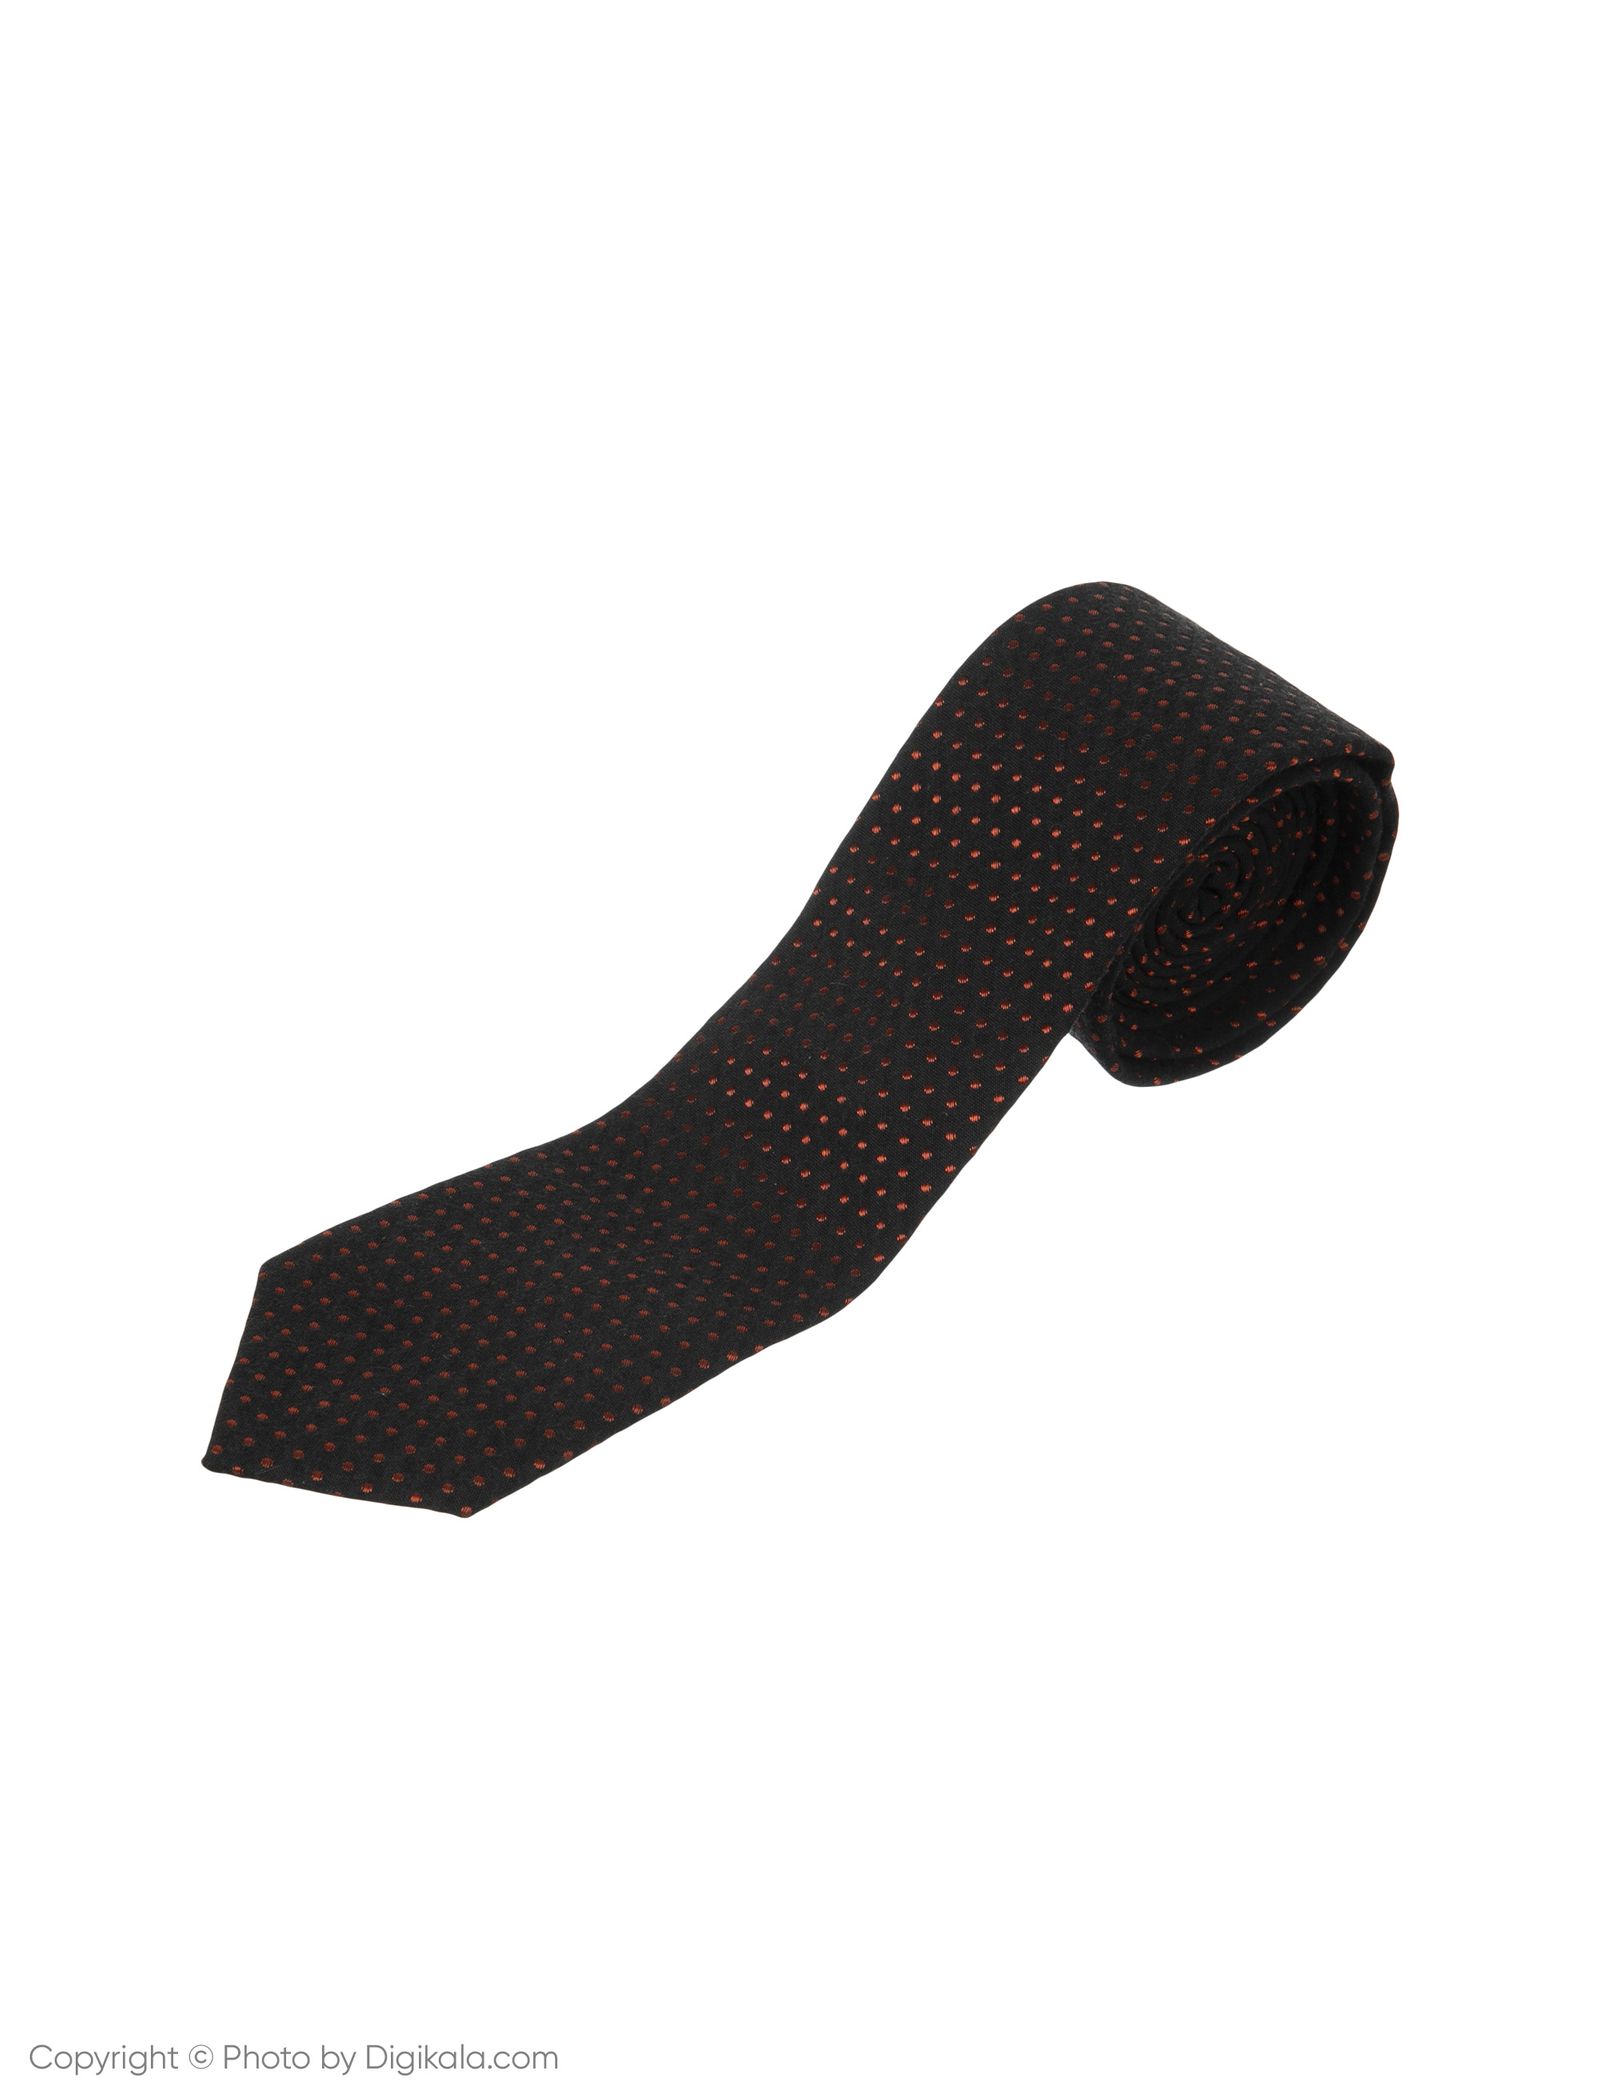 کراوات پاترون مدل TGBK3 - مشکی - 2